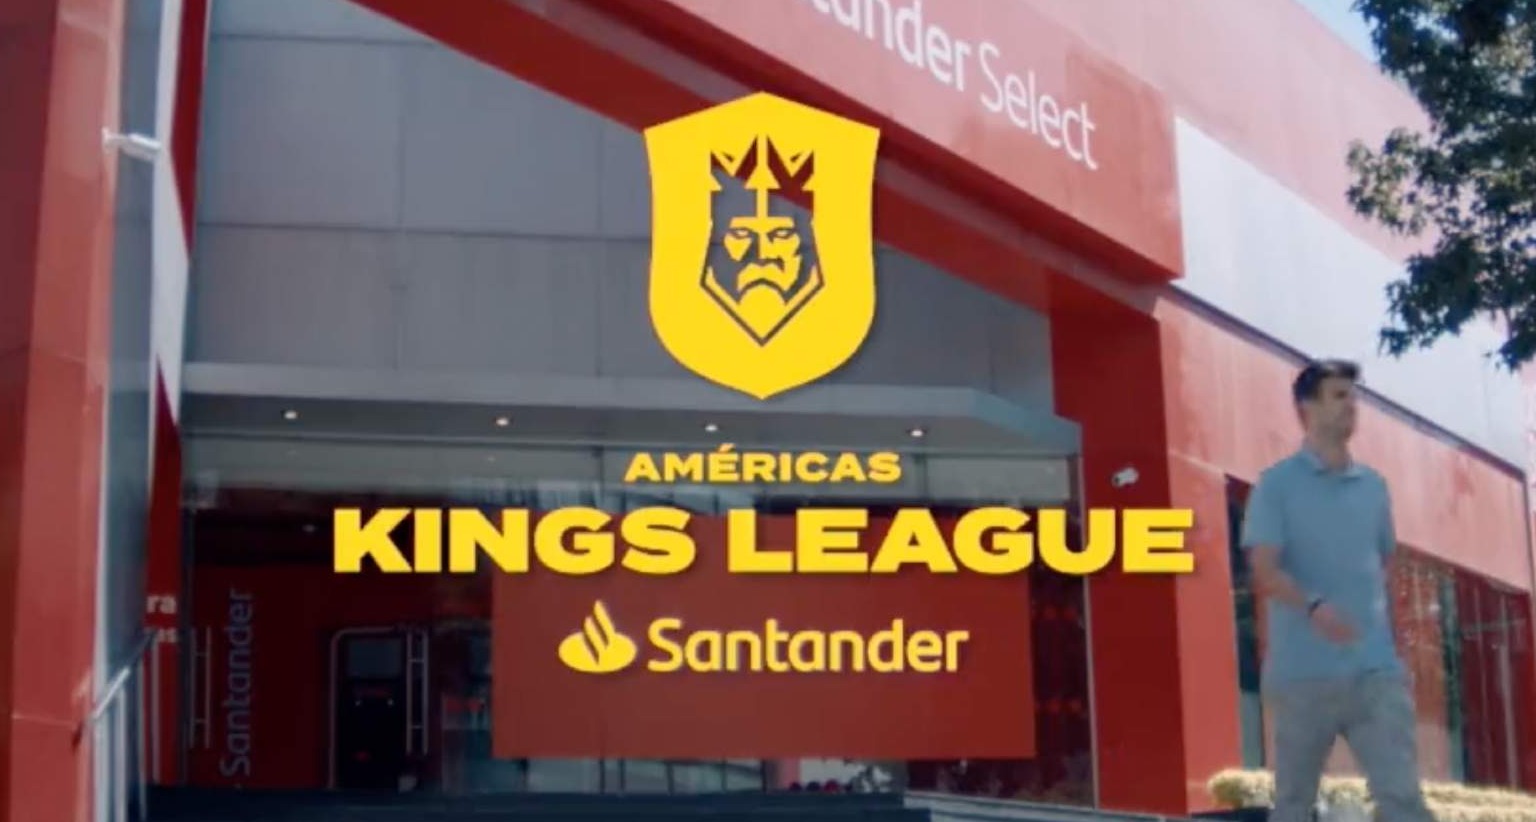 Américas Kings League Santander